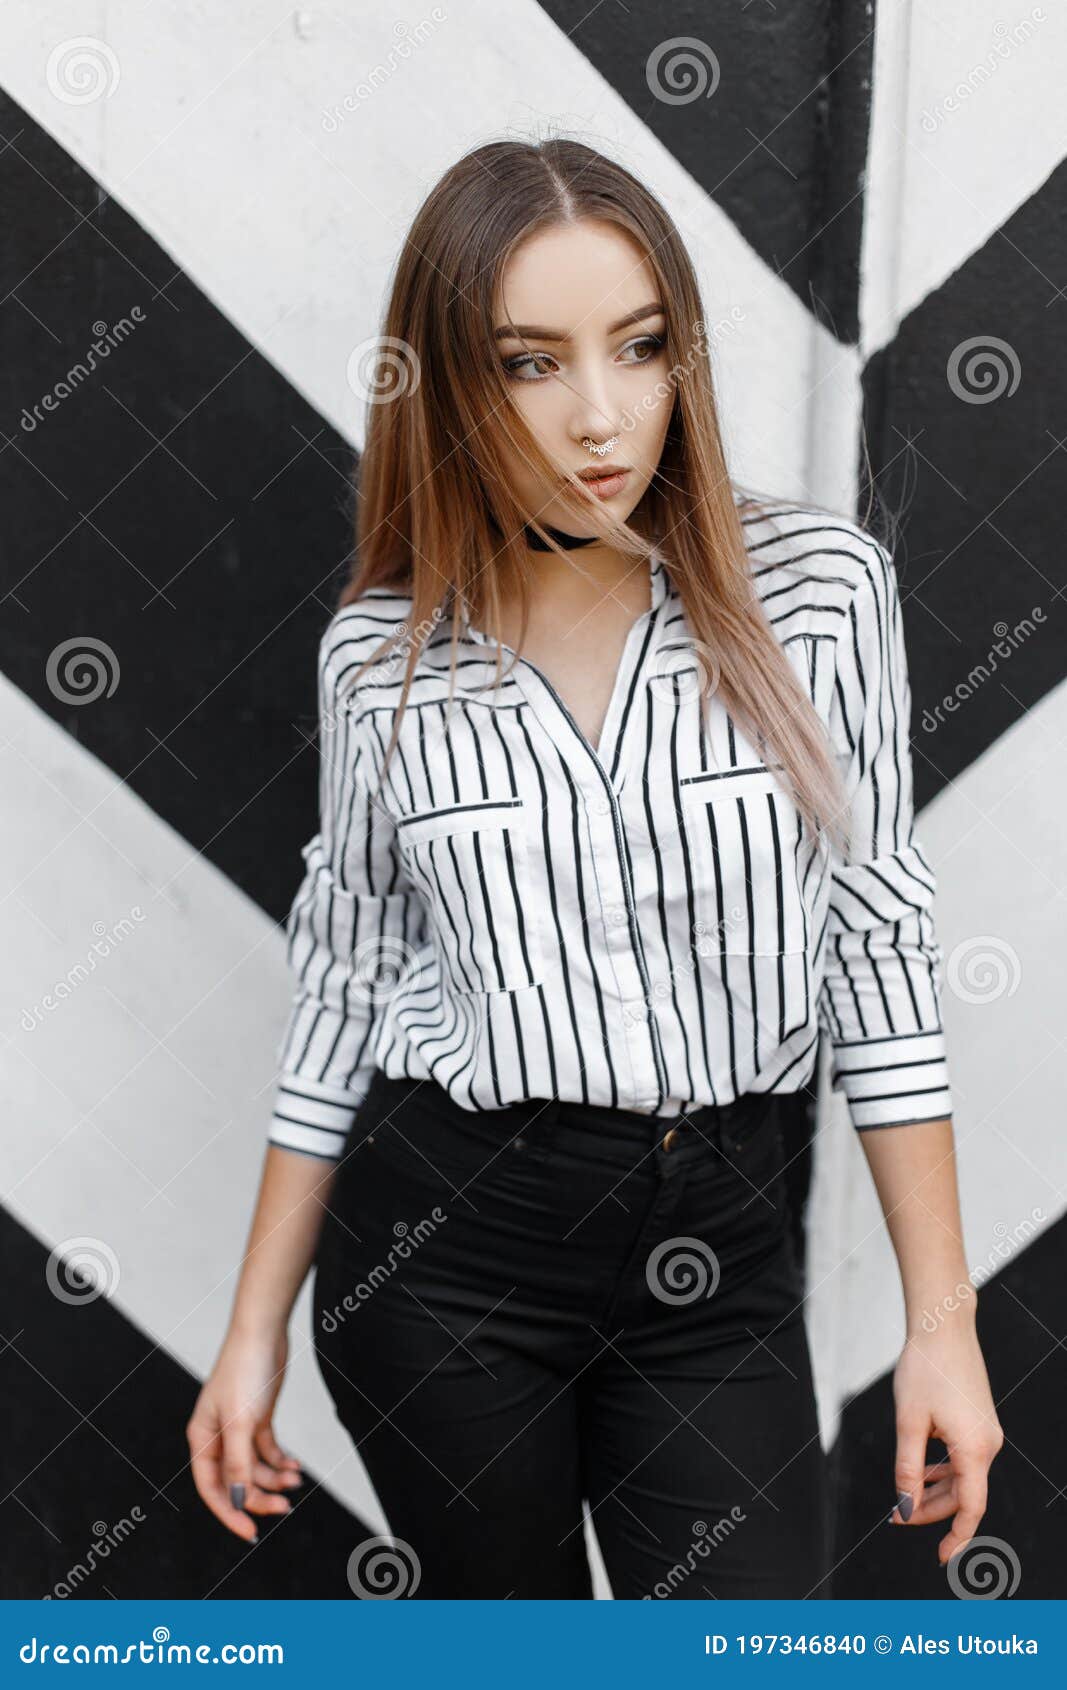 Atractiva Y Elegante Joven Mujer Con Pantalones Negros Y Elegantes En Una Elegante Blusa En Una Tira Con Perforación En La Nariz D Foto de archivo Imagen de moderno, 197346840